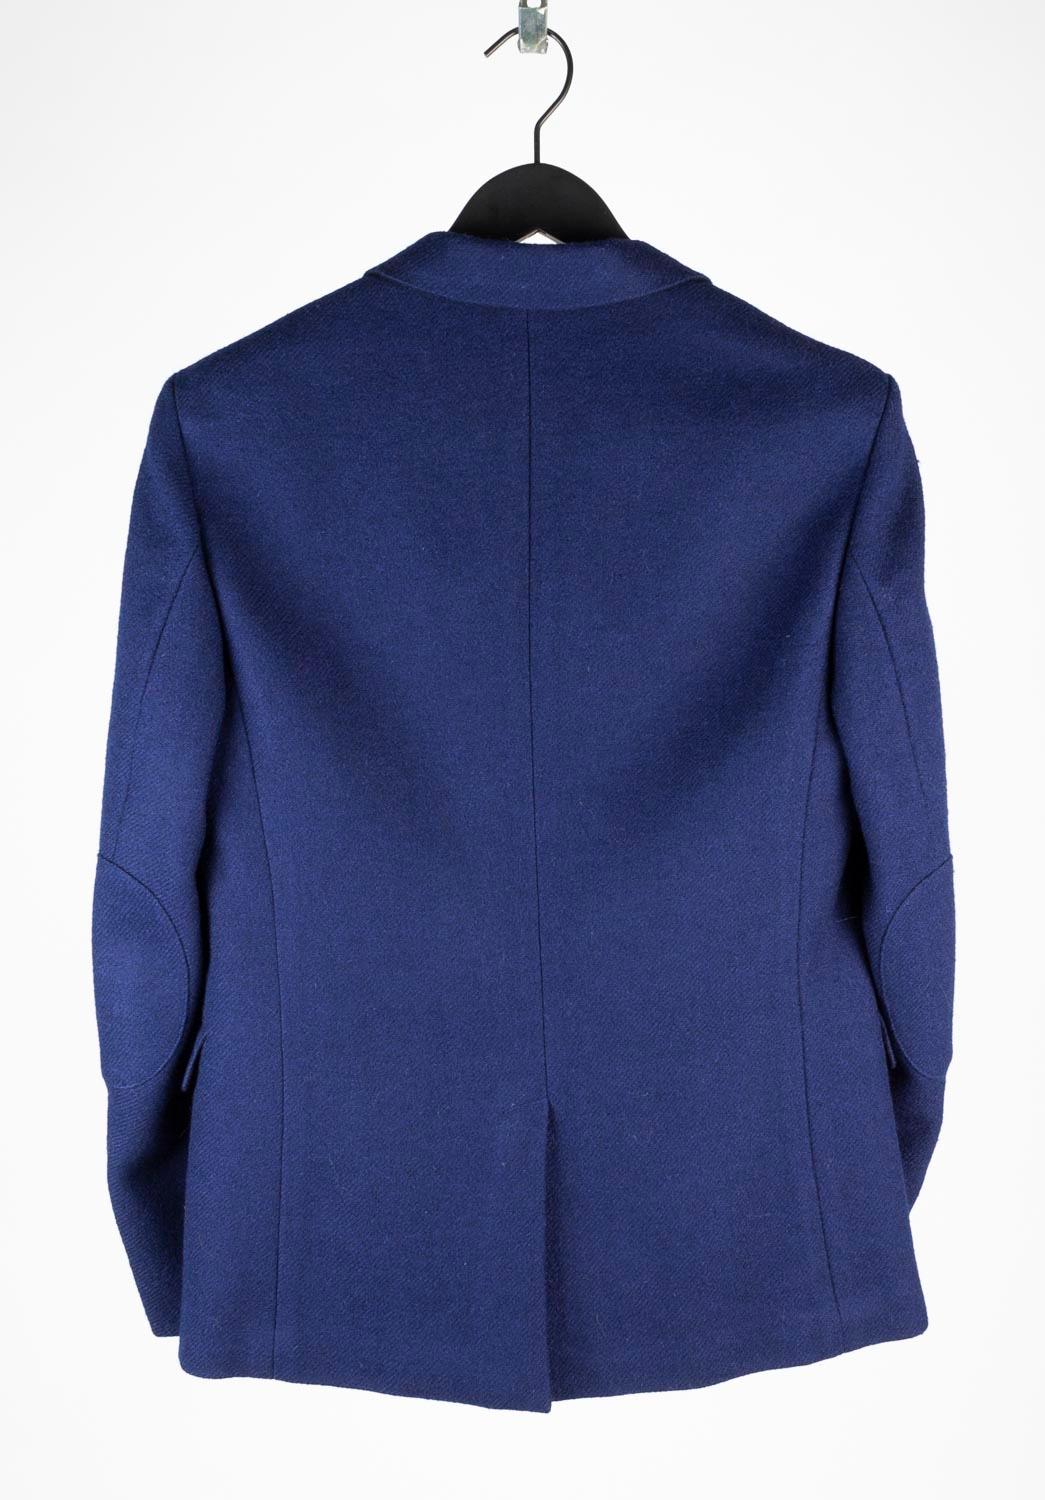 Prada Men Jacket Blazer Casual Size 50, S625 For Sale 5